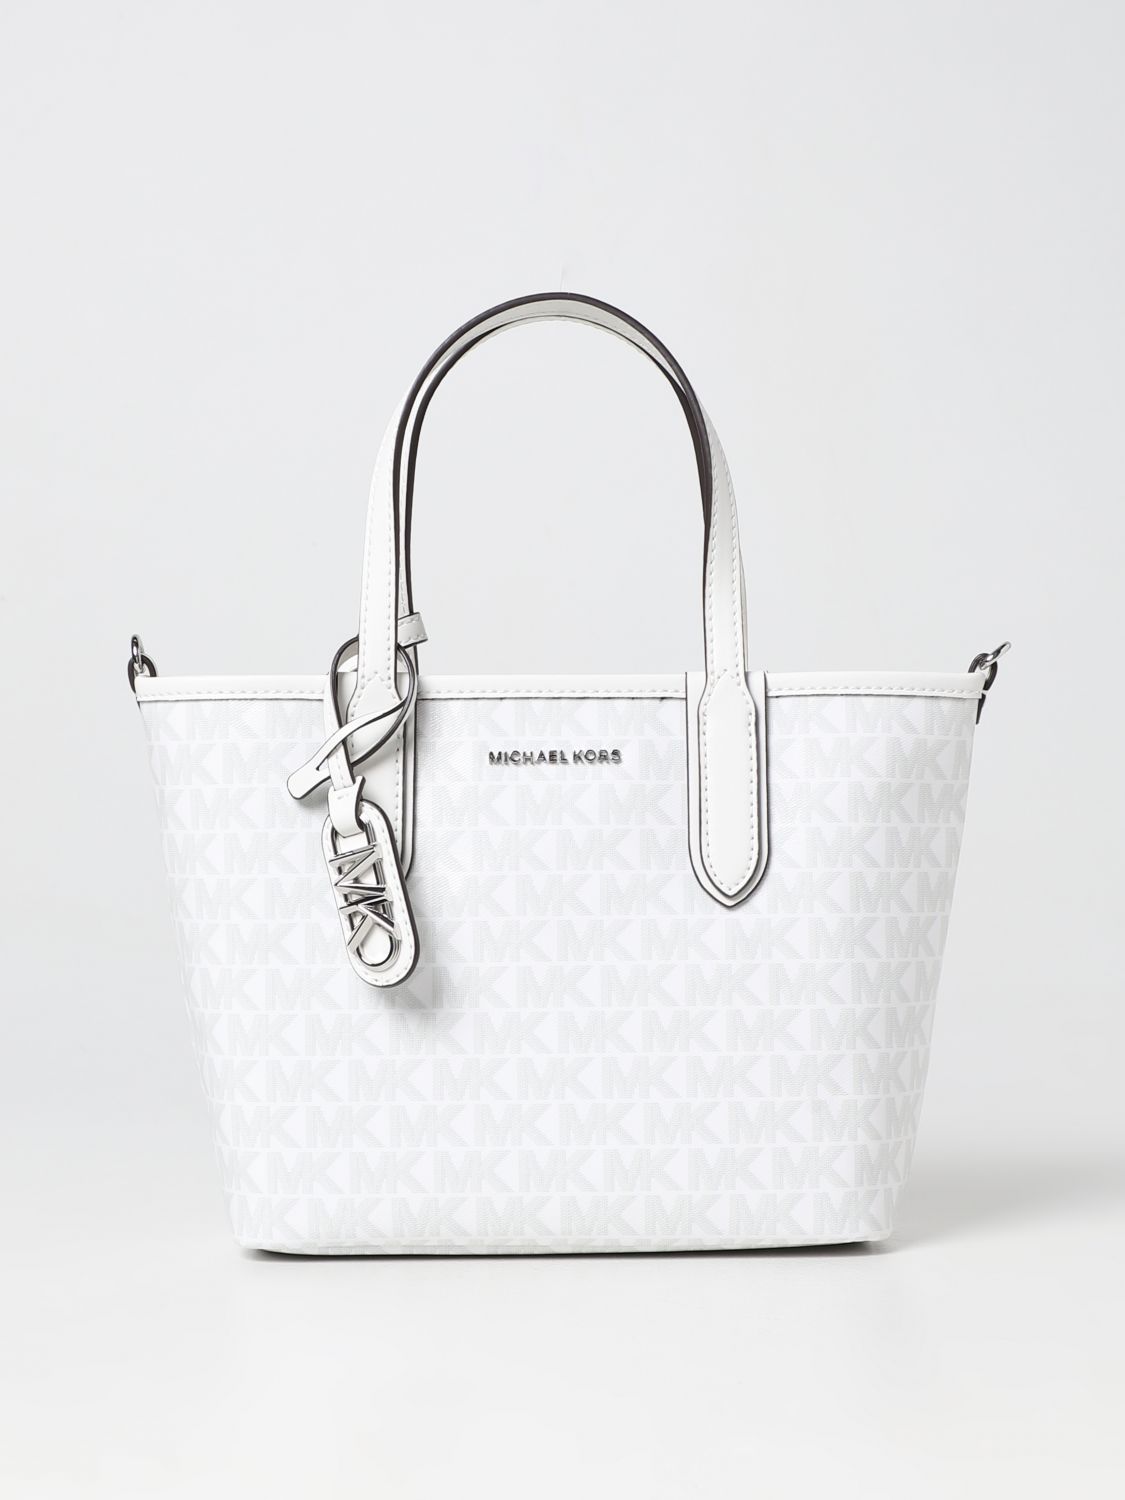 MICHAEL KORS MERCER MINI BAG Luxury Bags  Wallets on Carousell